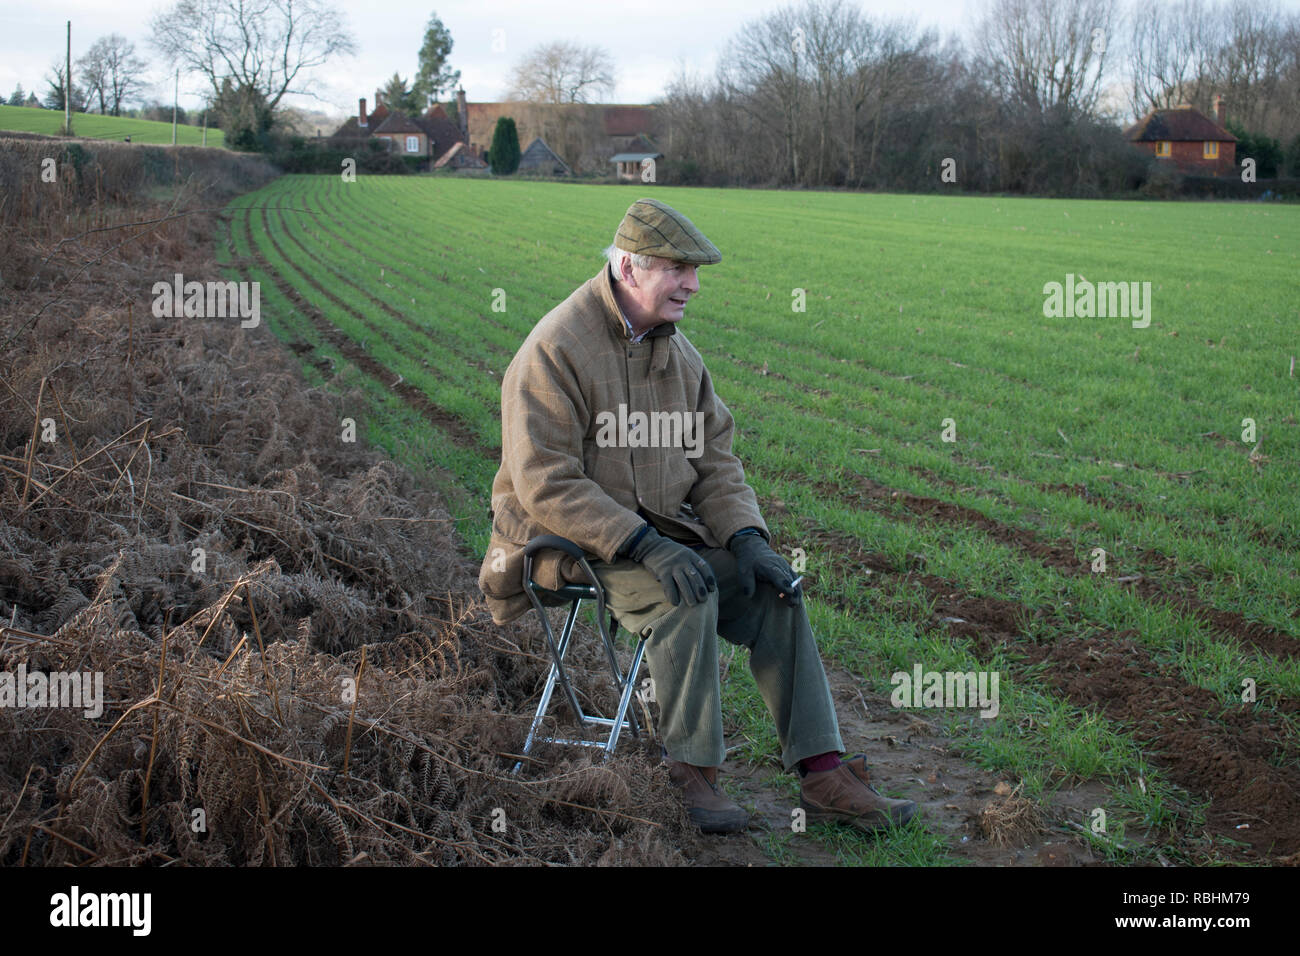 Bastone da tiro, anziano anziano seduto in campagna appassionato di sport da campo. Midhurst, West Sussex 2019. 2010 HOMER SYKES Foto Stock